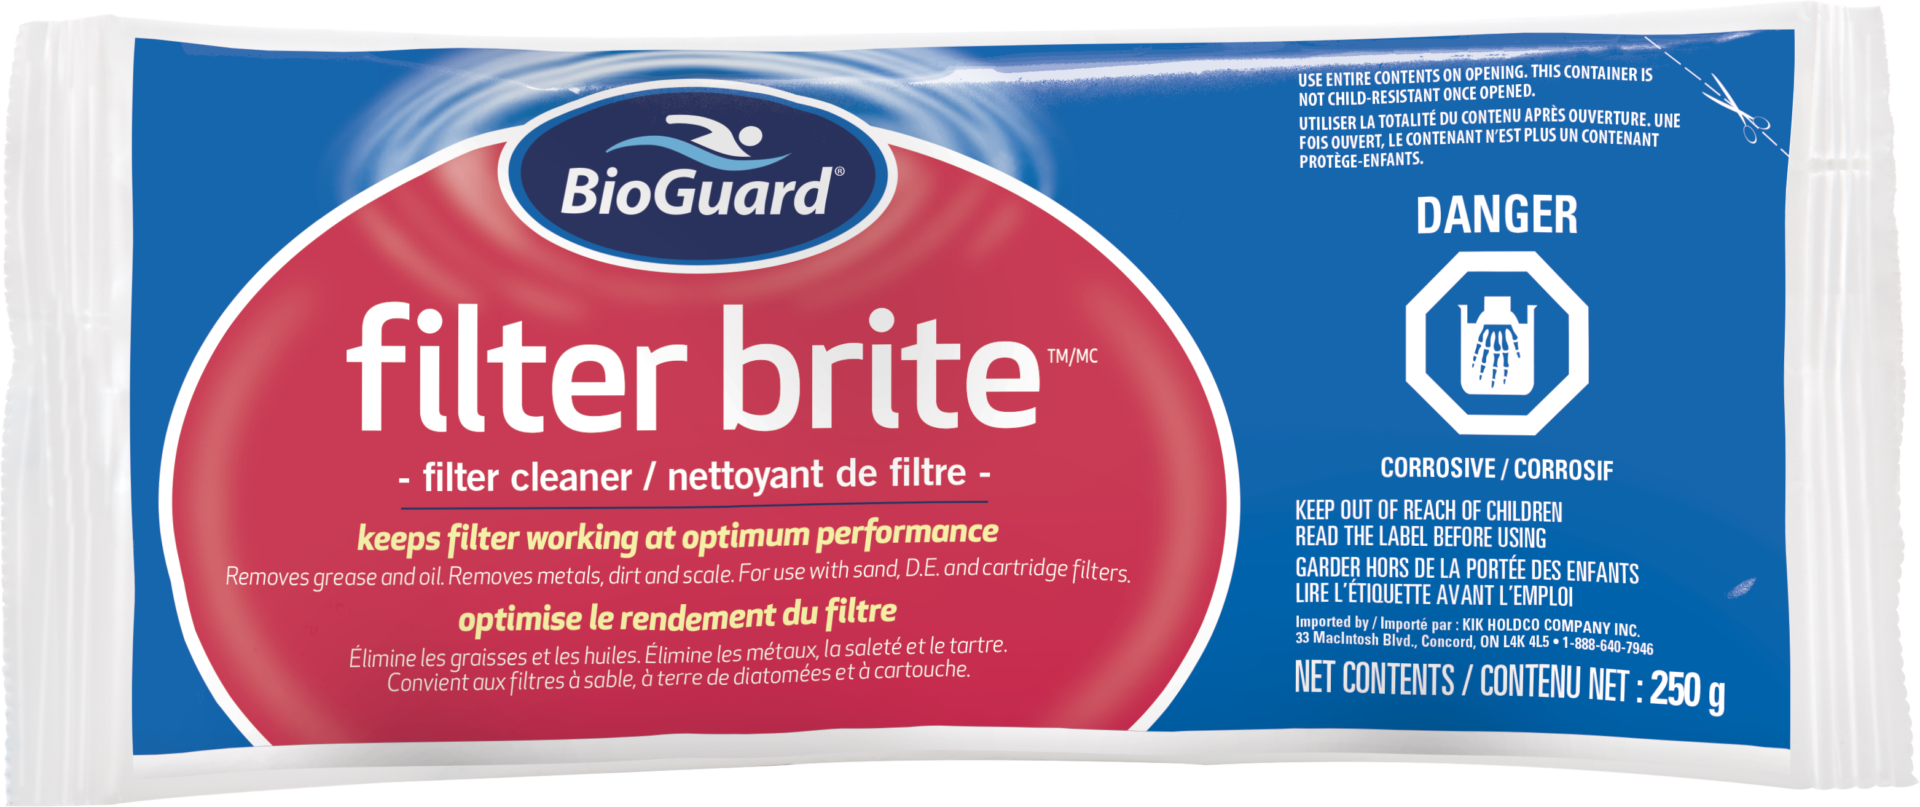 BioGuard Filter Brite 250g - BioGuard Filter Brite 250g